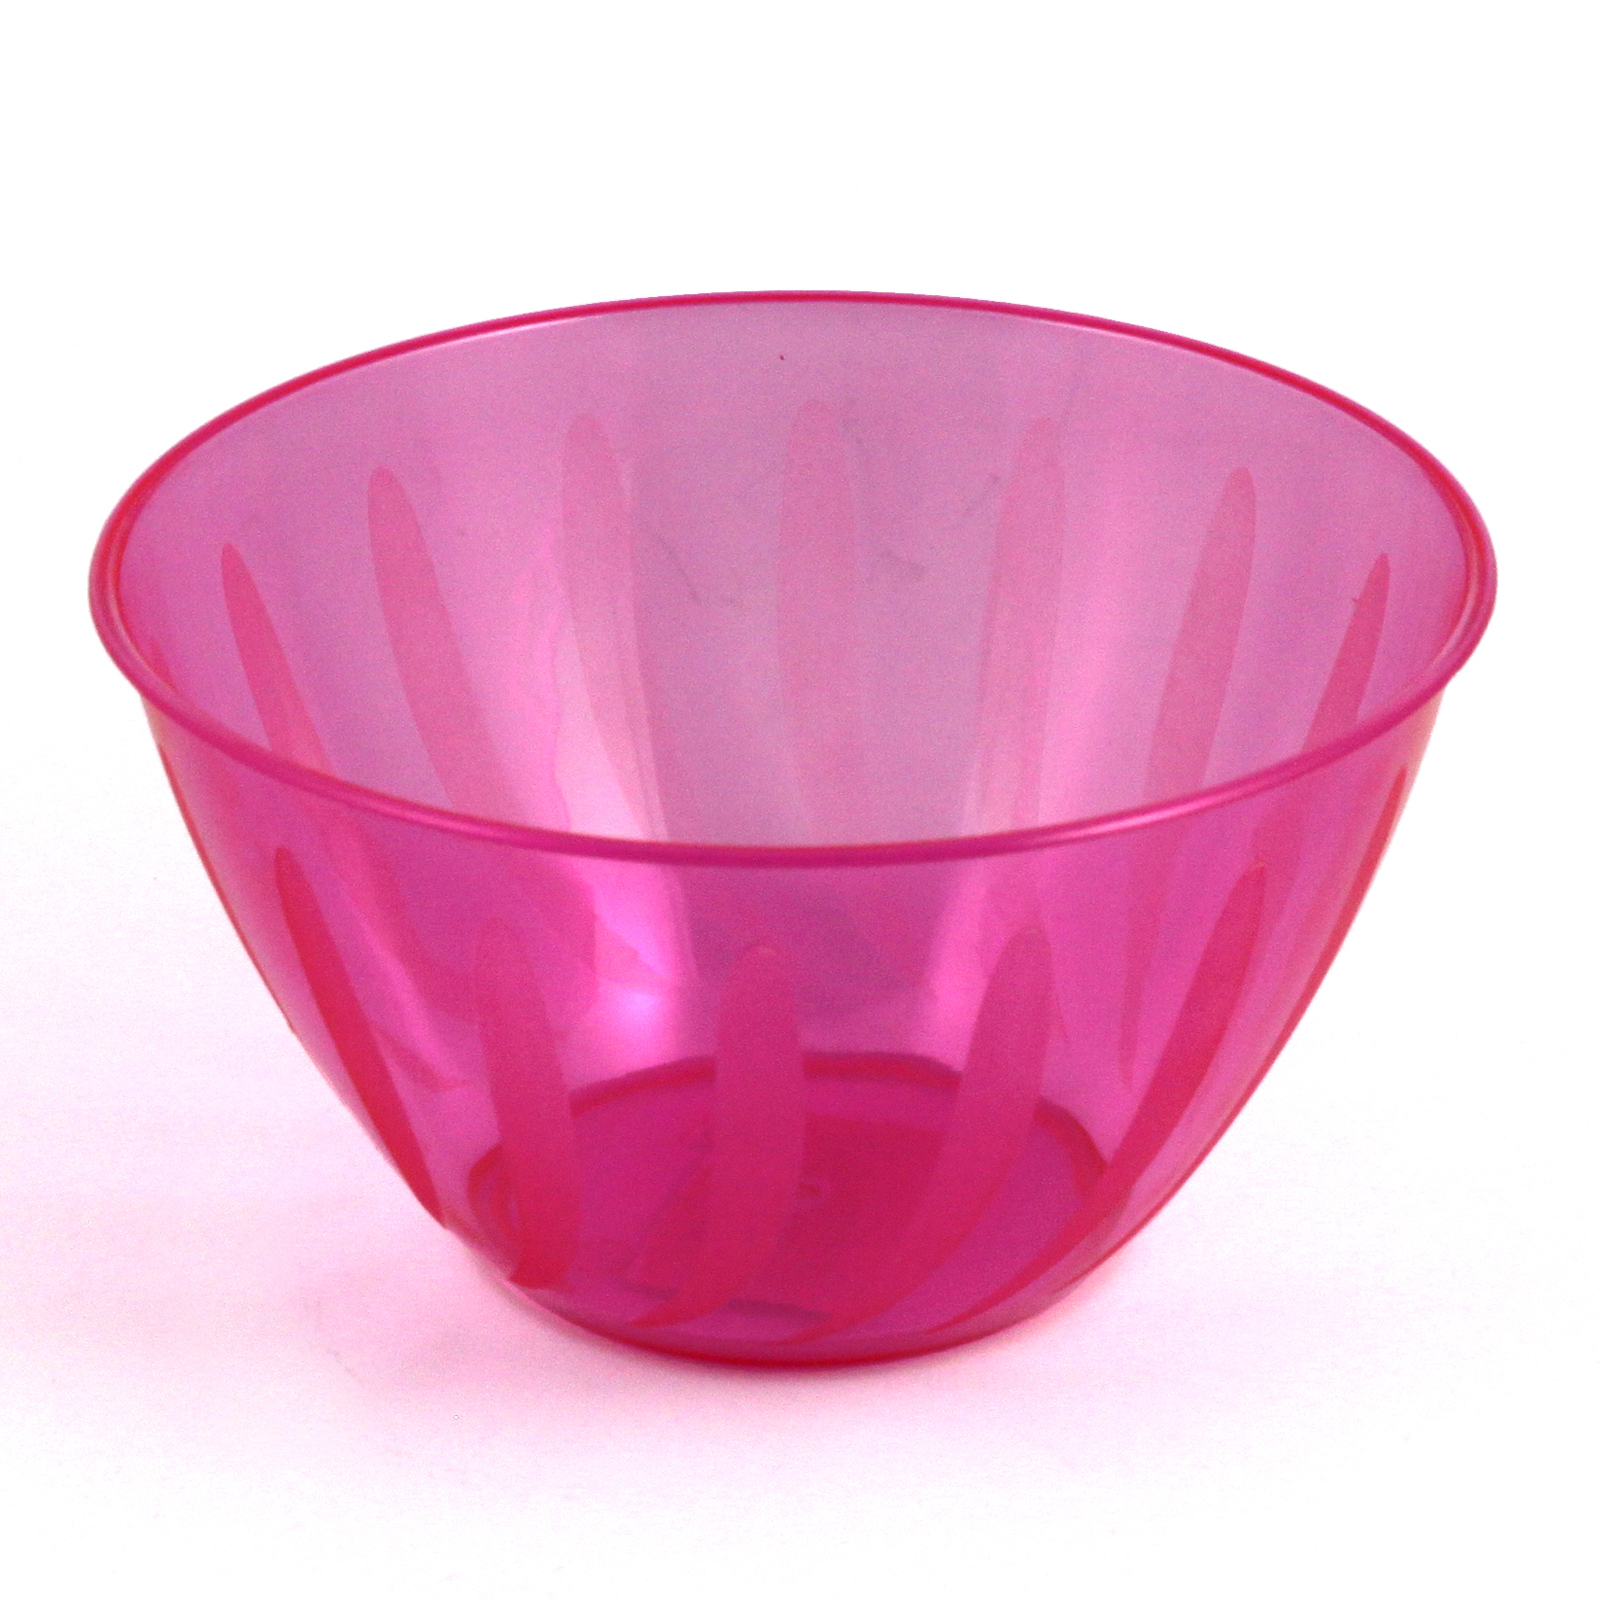 24 oz. Swirls Small Bowl Plastic Cups, Utensils, Bowls